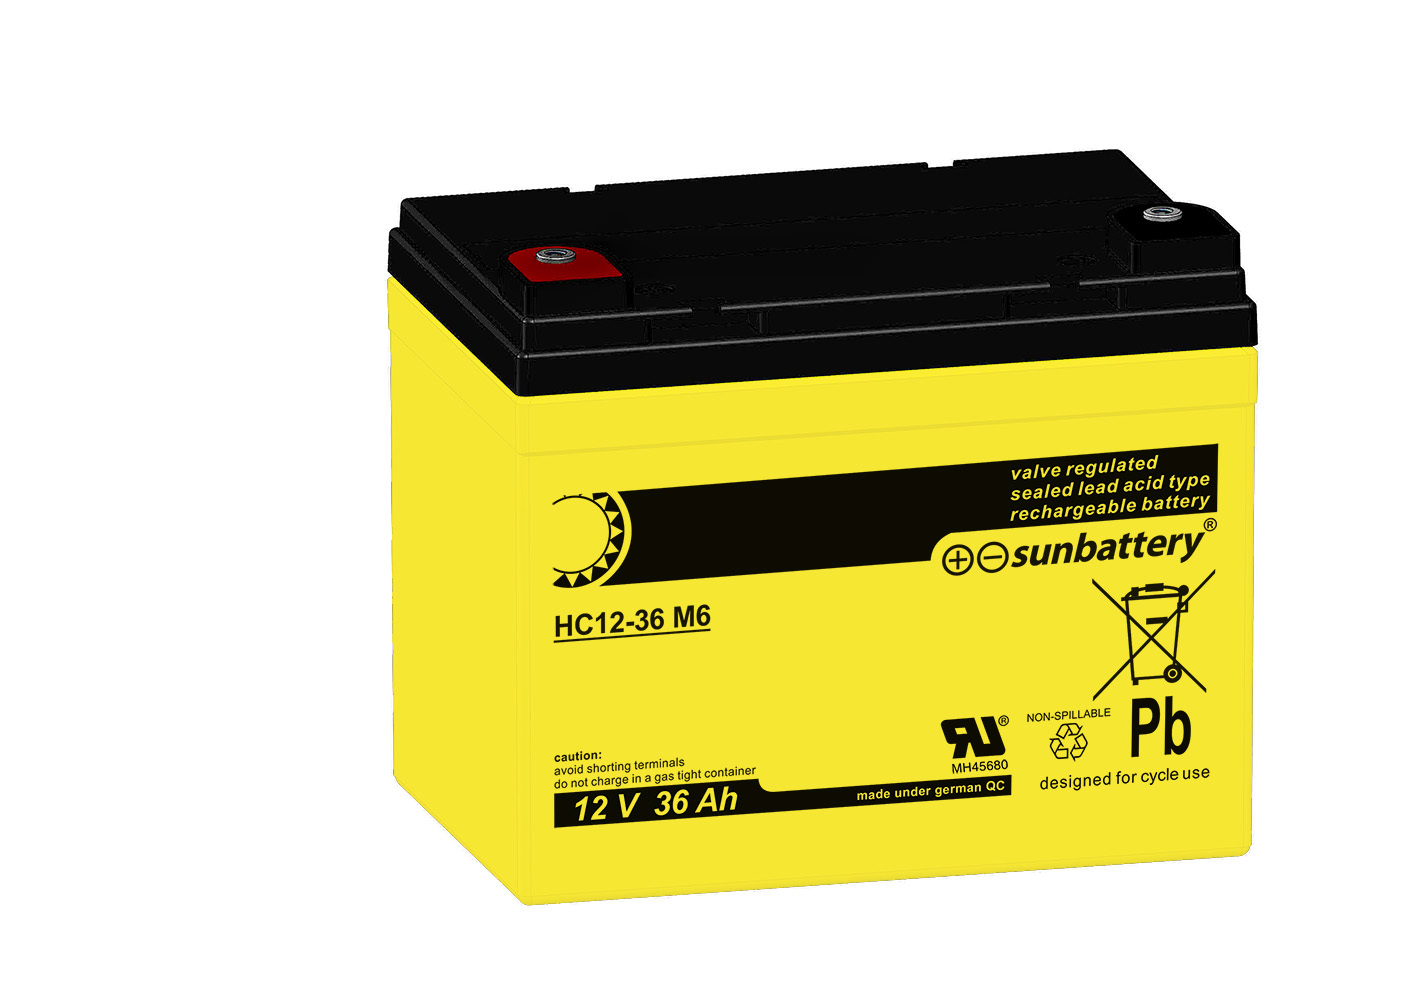 SUN Battery HC12-36 M6 